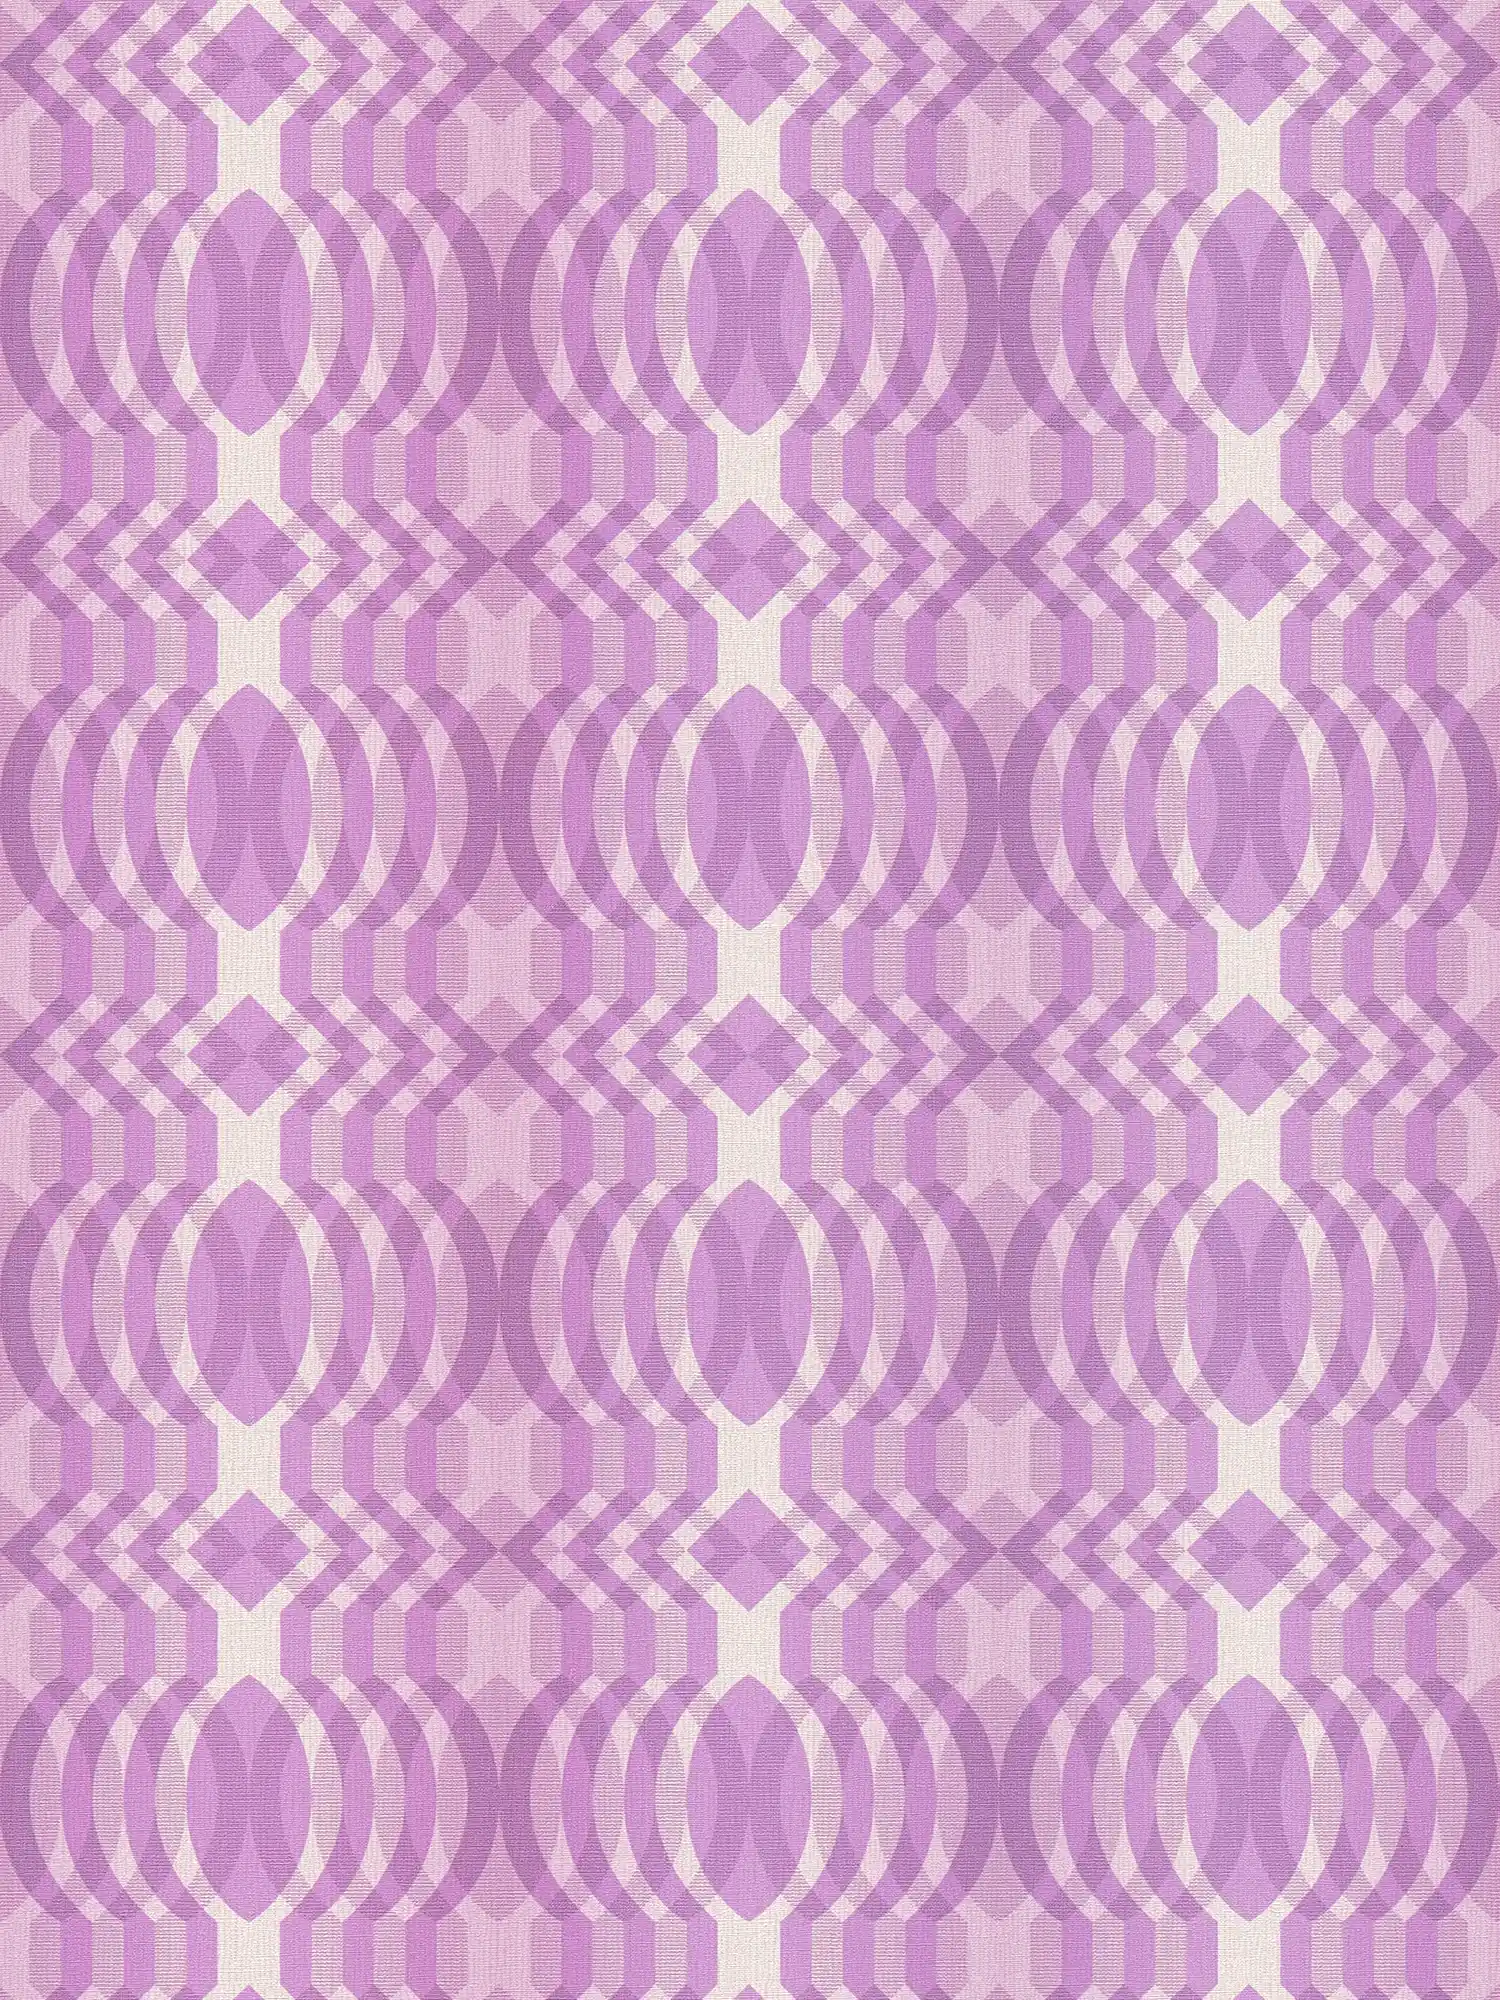             Vliesbehang met geometrisch patroon in retrostijl - paars, crème, wit
        